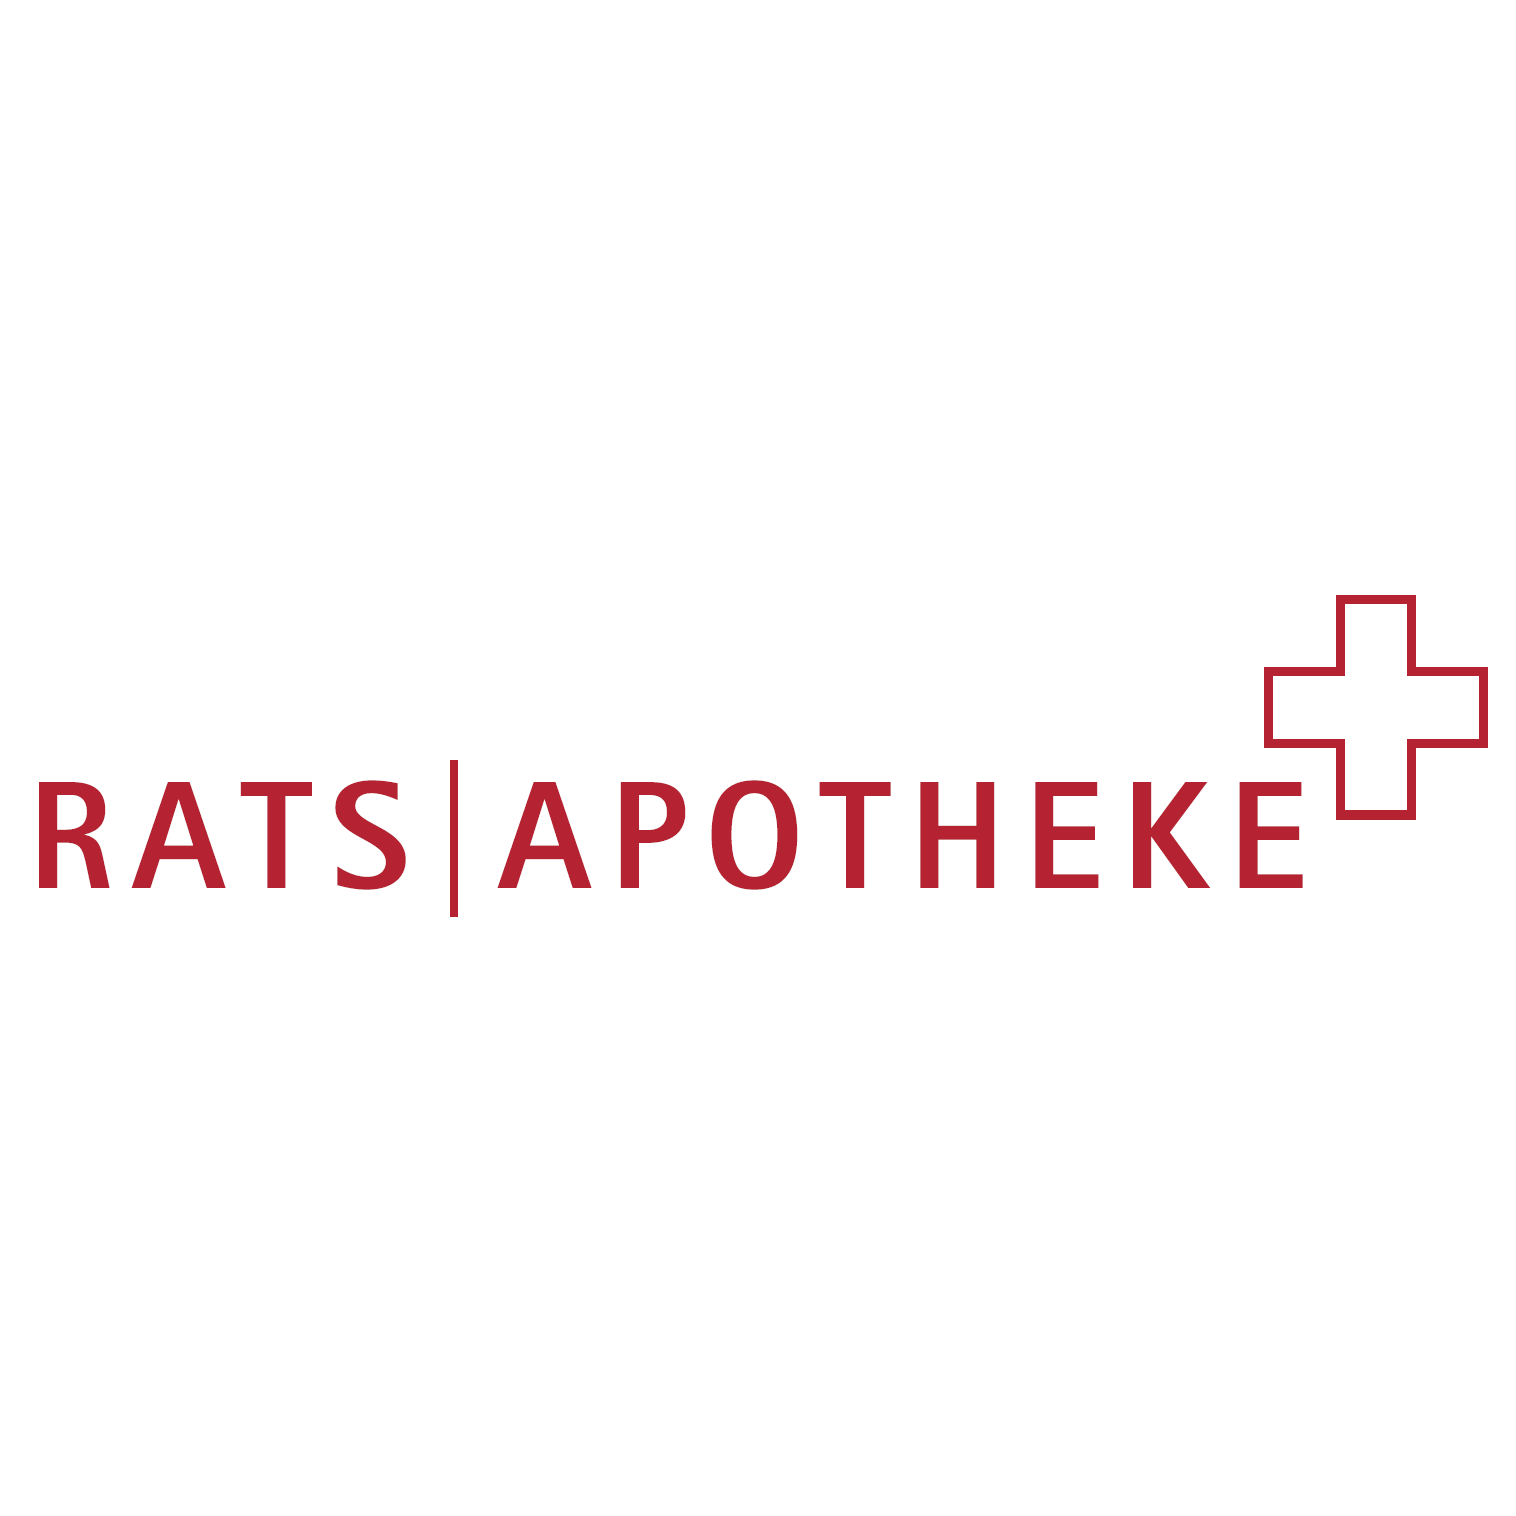 Rats-Apotheke in Bad Zwischenahn - Logo